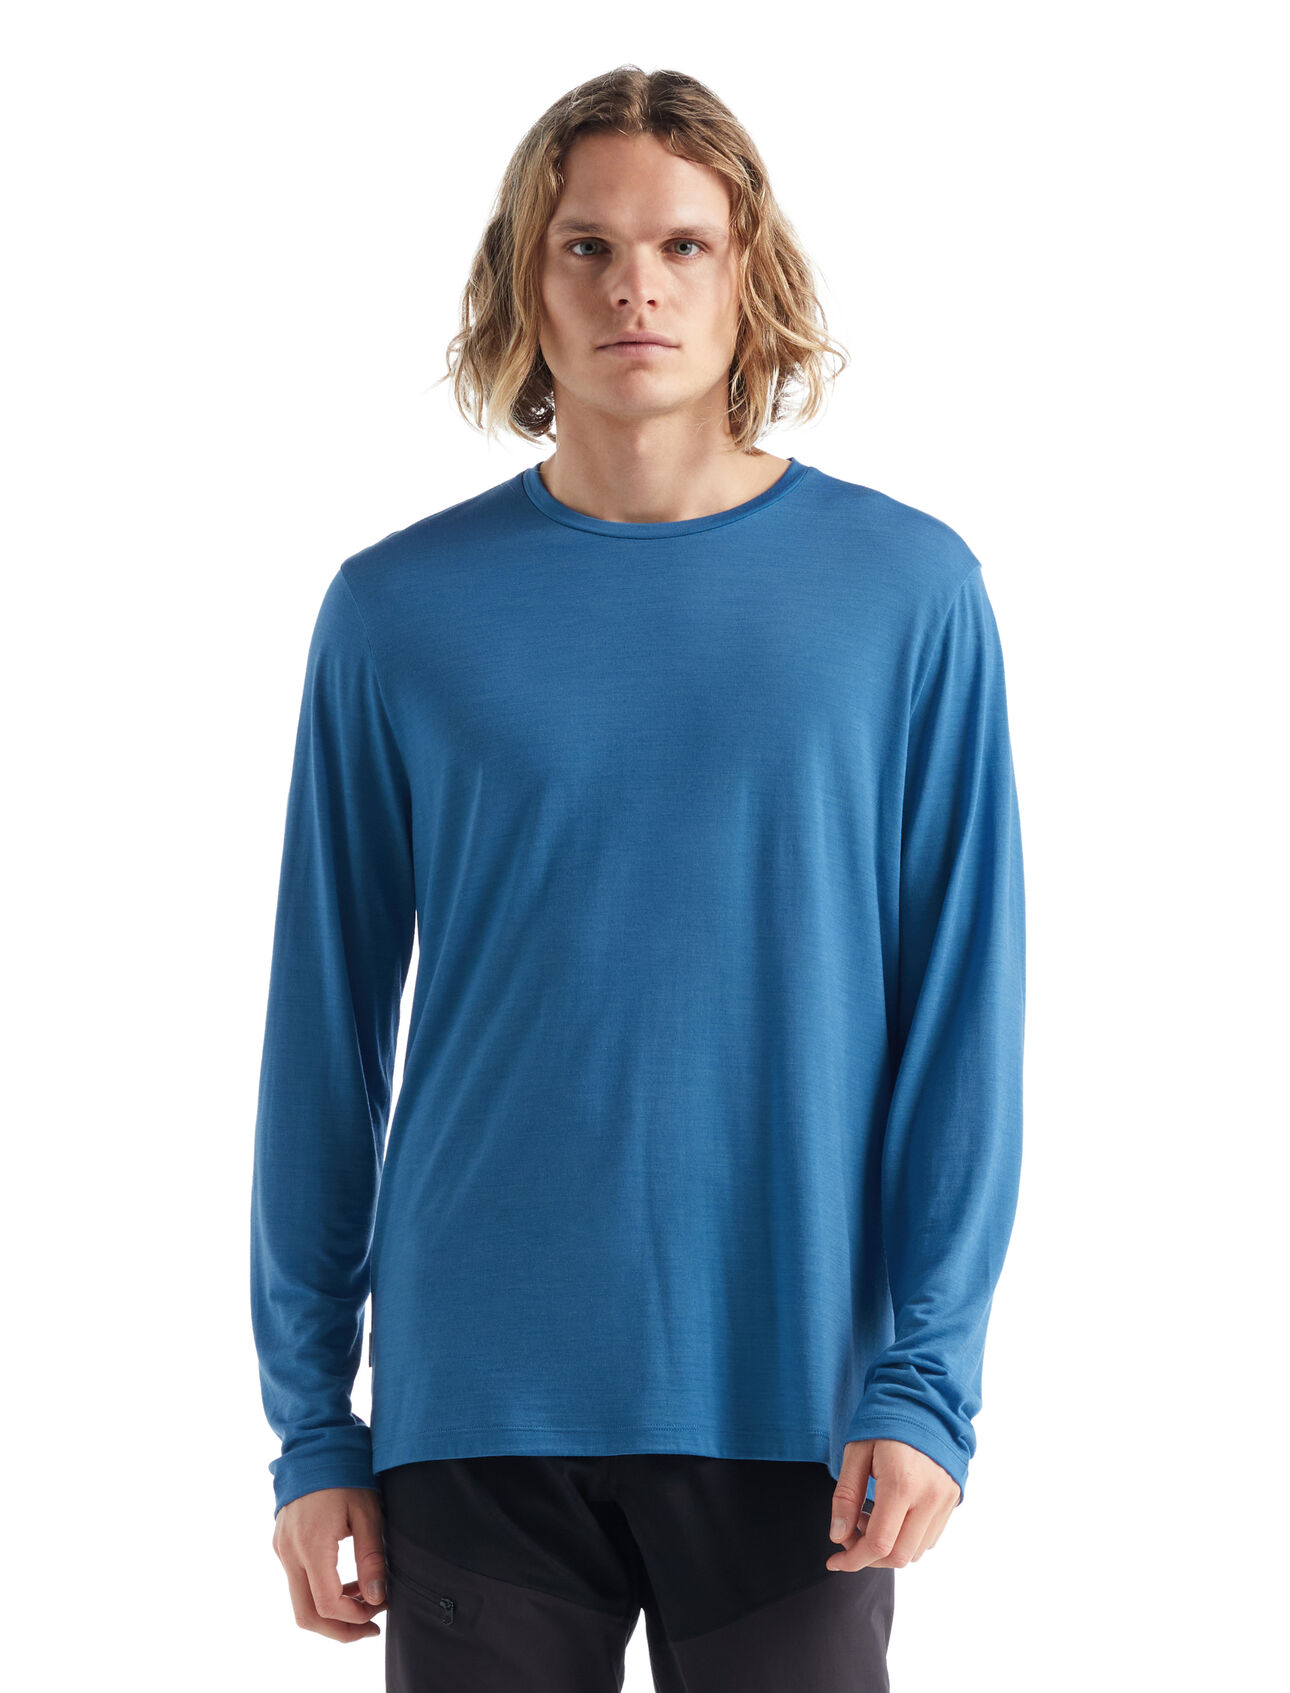 Herr Sphere II långärmad t-shirt i merino Sphere II långärmad t-shirt är en mjuk tröja i merinoblandning som är tillverkad av vårt lättviktiga Cool-Lite™-jerseytyg, vilket ger naturligt ventilerande, lukthämmande och bekväma egenskaper. 